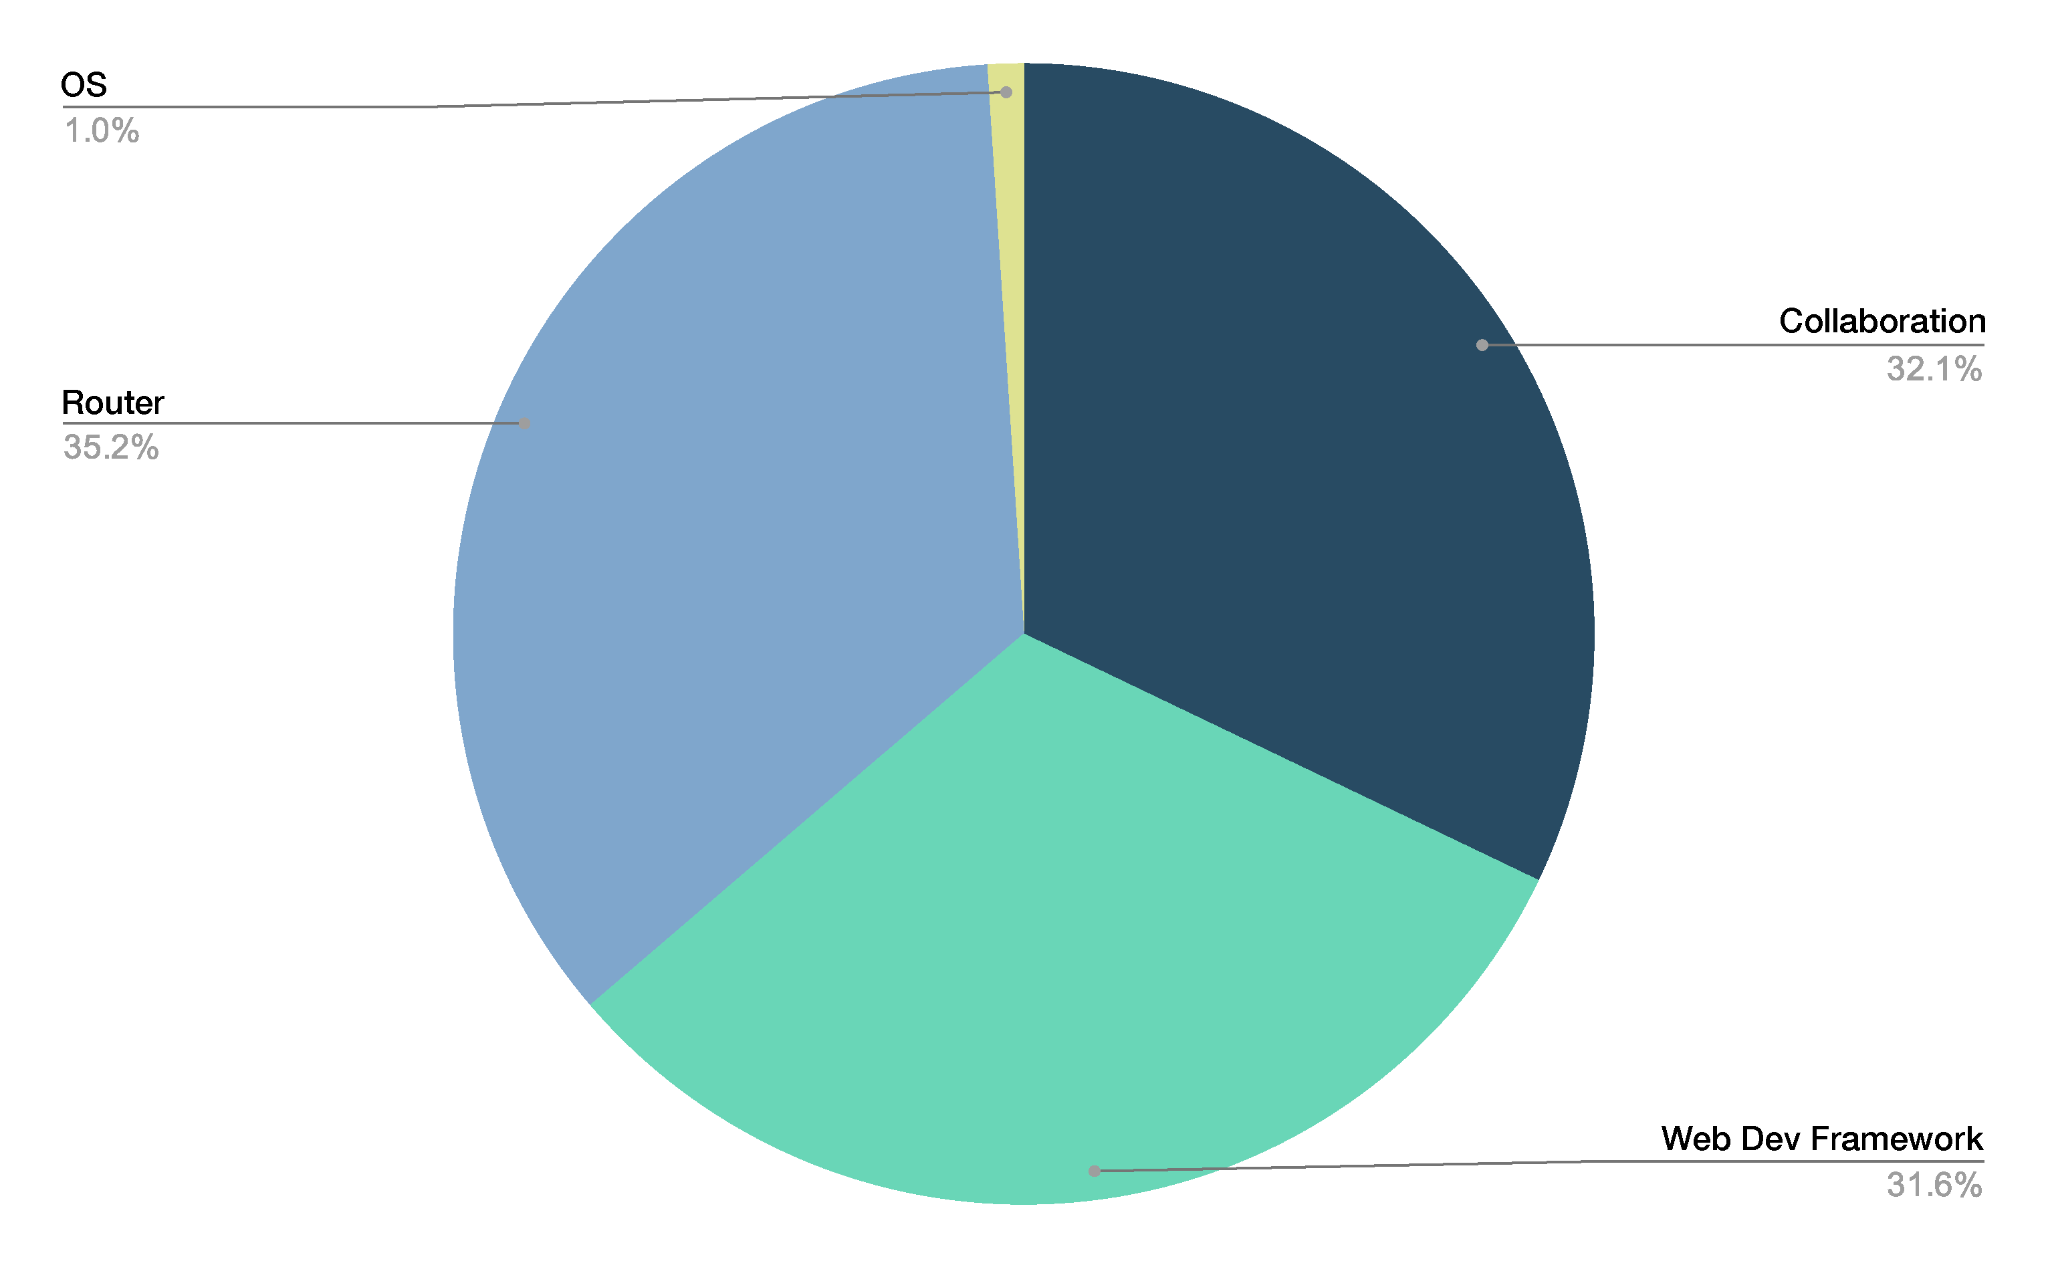 A imagem 5 é um gráfico circular das categorias das principais entidades visadas. Colaboração, estrutura de desenvolvimento web e roteador estão divididos quase igualmente em 32,1%, 31,6% e 35,2%, respectivamente. O sistema operacional ficou com 1%.